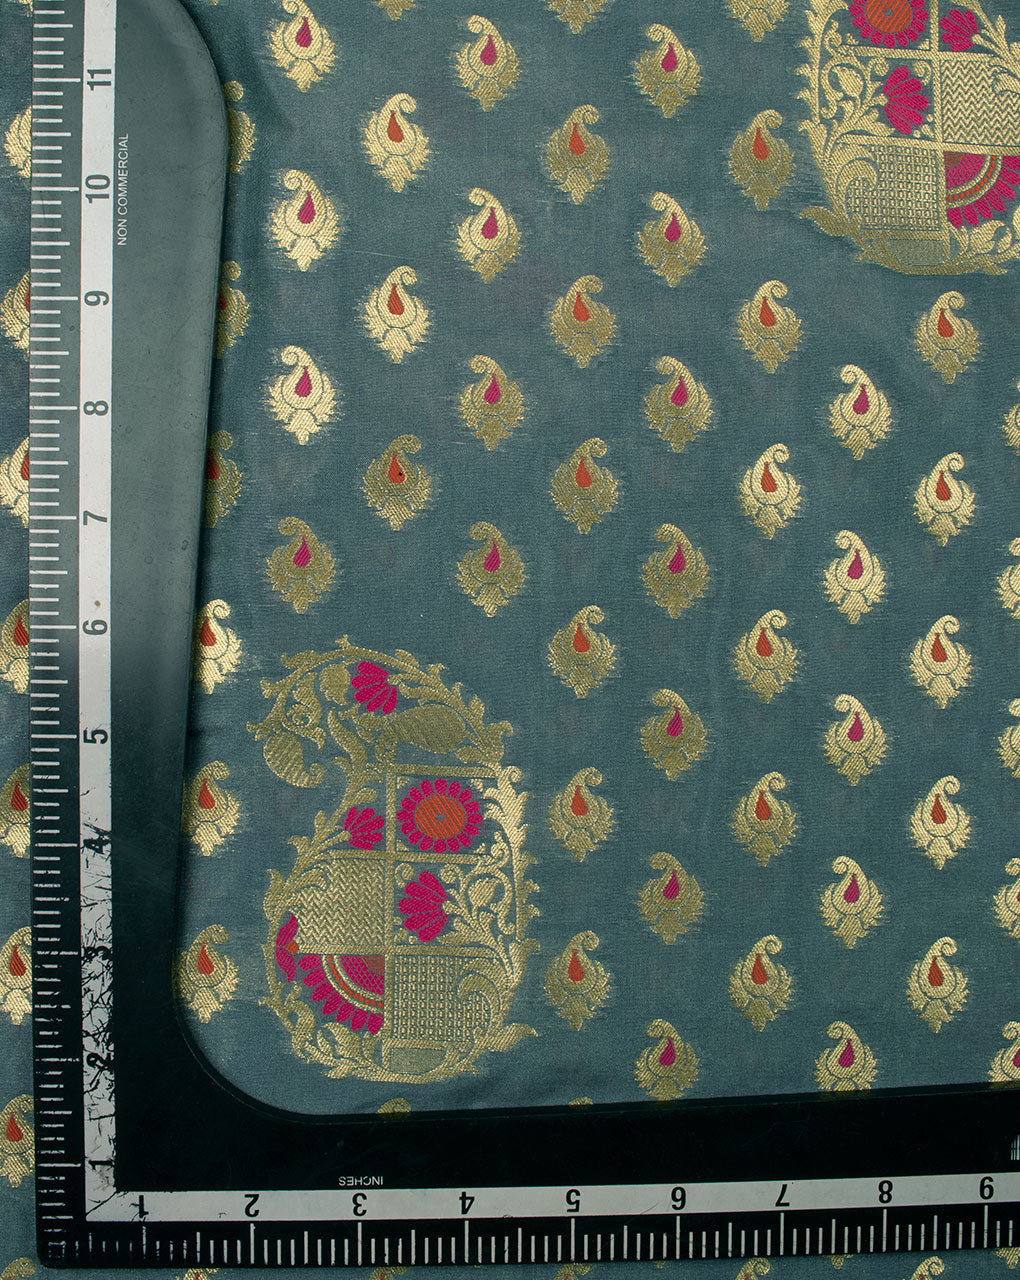 Grey Gold Paisley Pattern Zari Jacquard Banarasi Taffeta Silk Fabric - Fabriclore.com